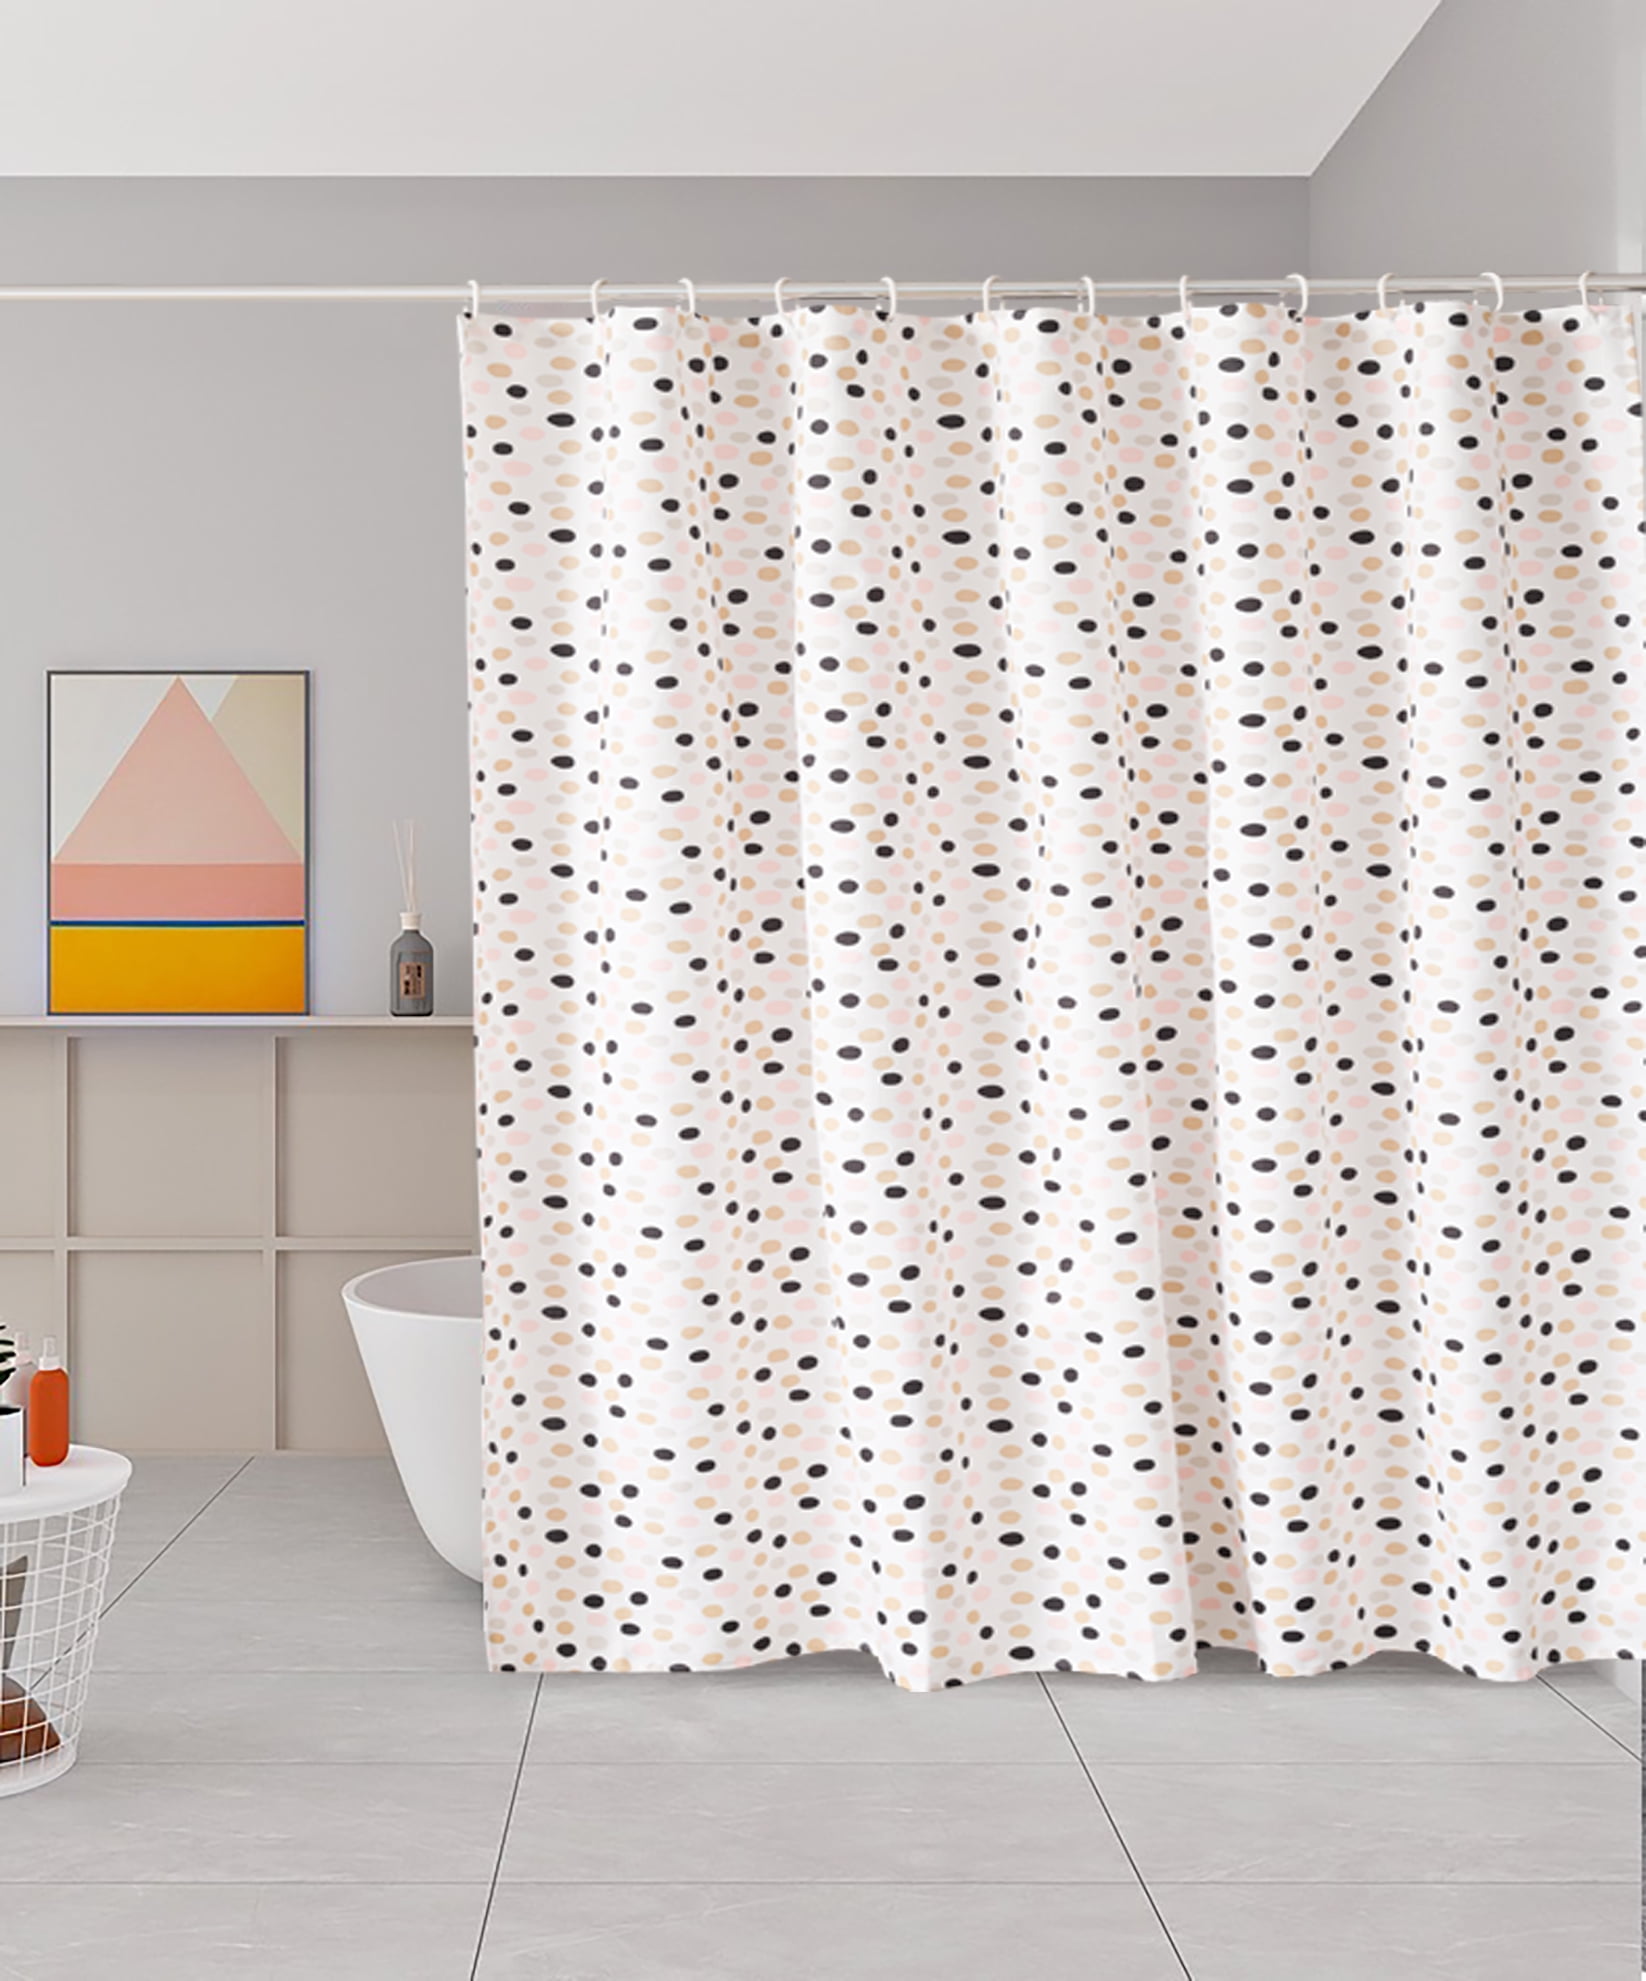 Funky kids peva polyester duck pattern waterproof bath shower curtain 